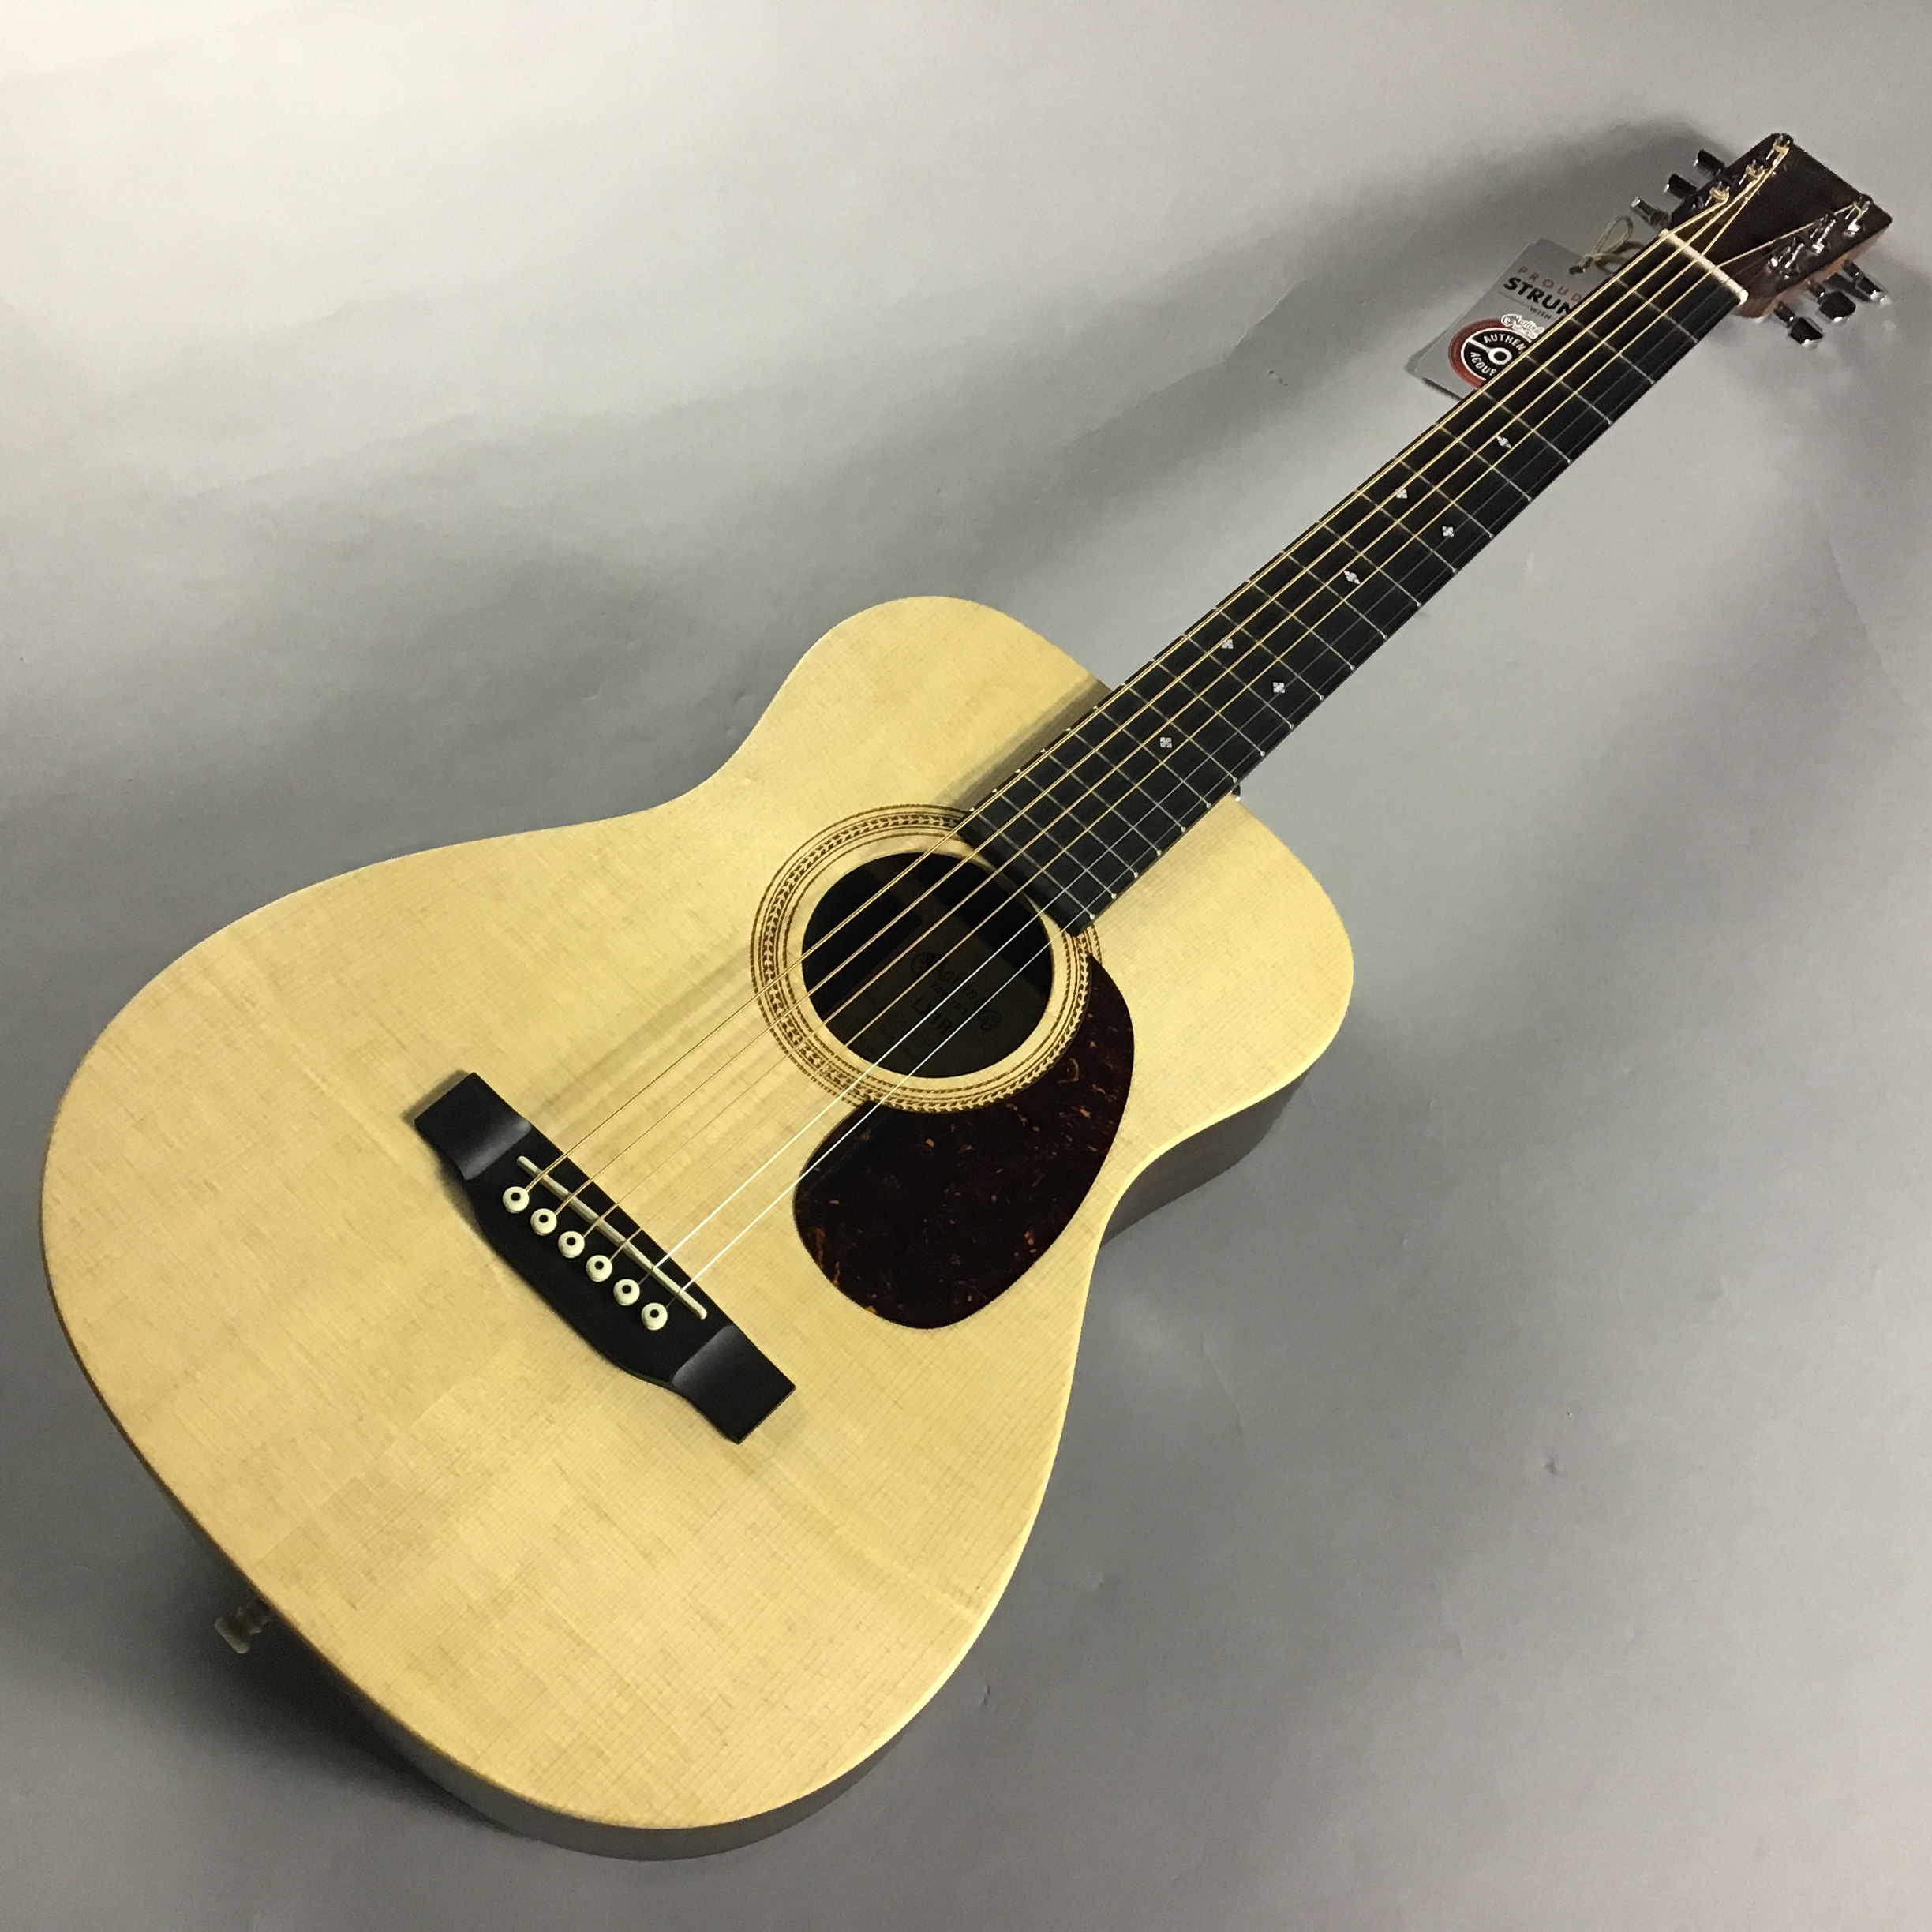 マーチンのNEWミニギター「LX1R」2020年最新モデル 【追記】2021年1月